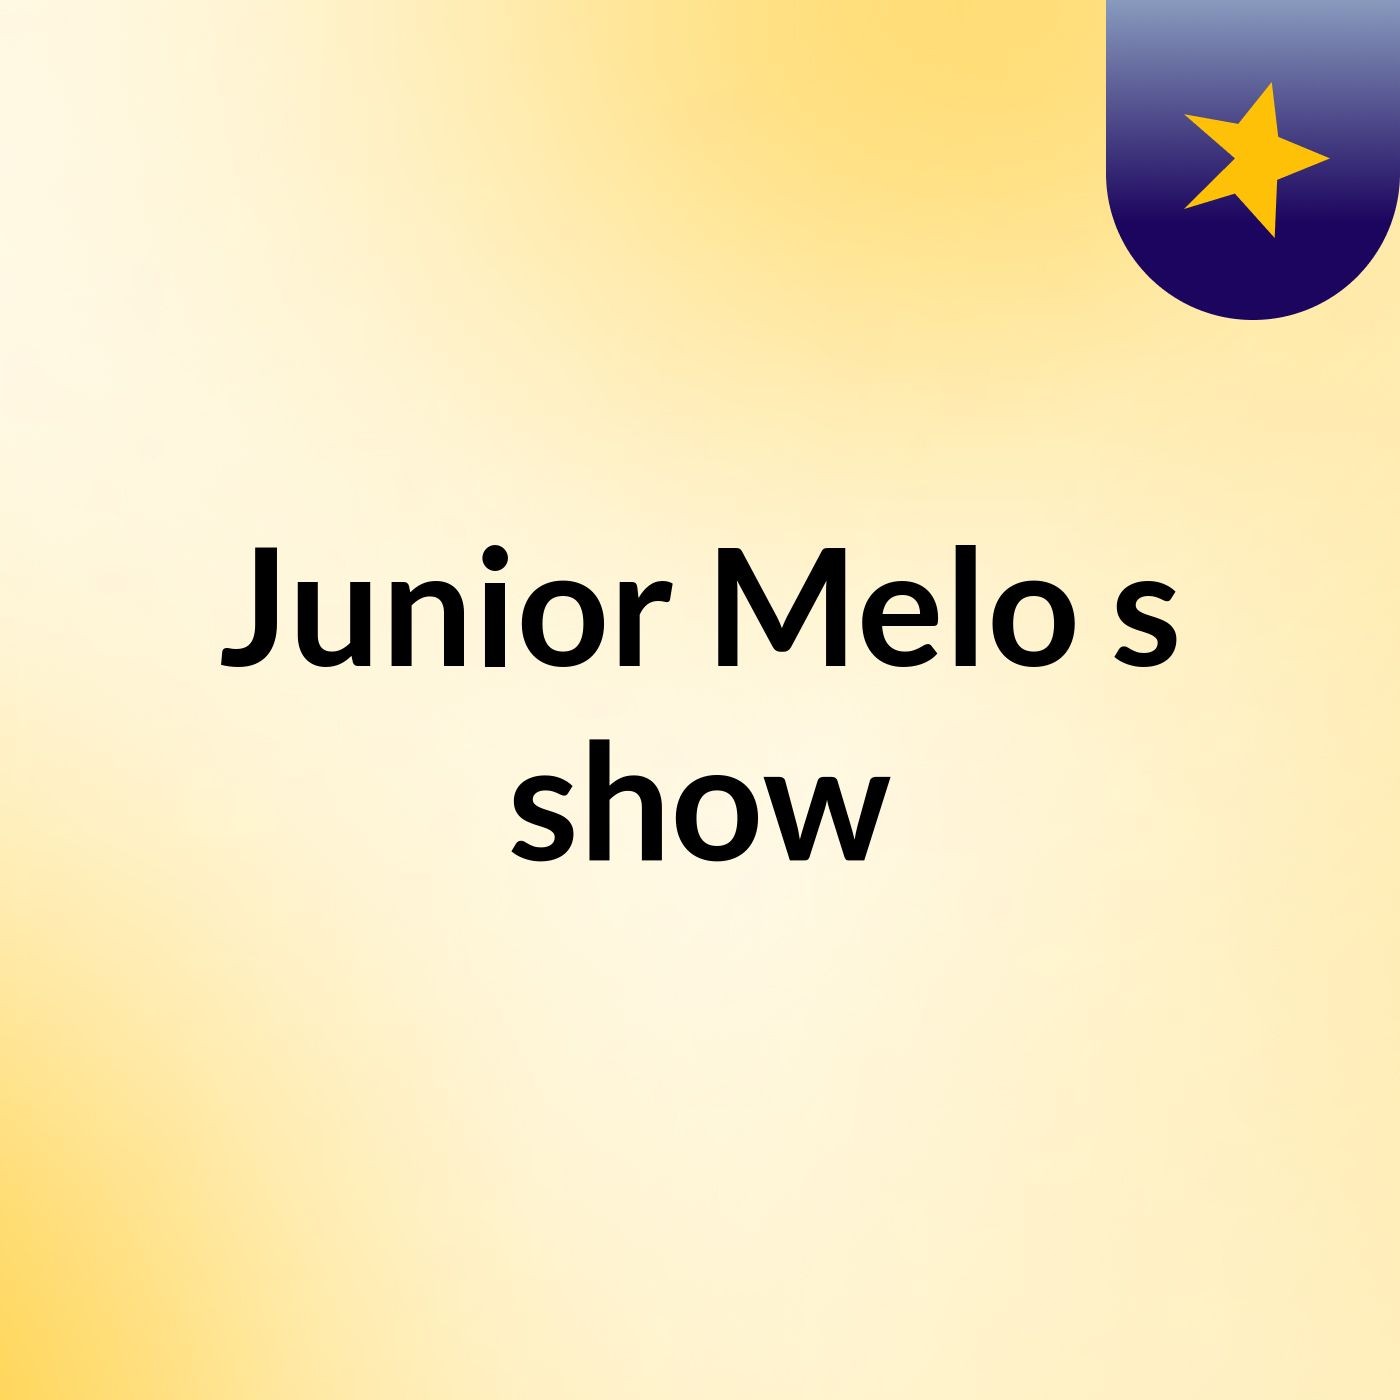 Junior Melo's show